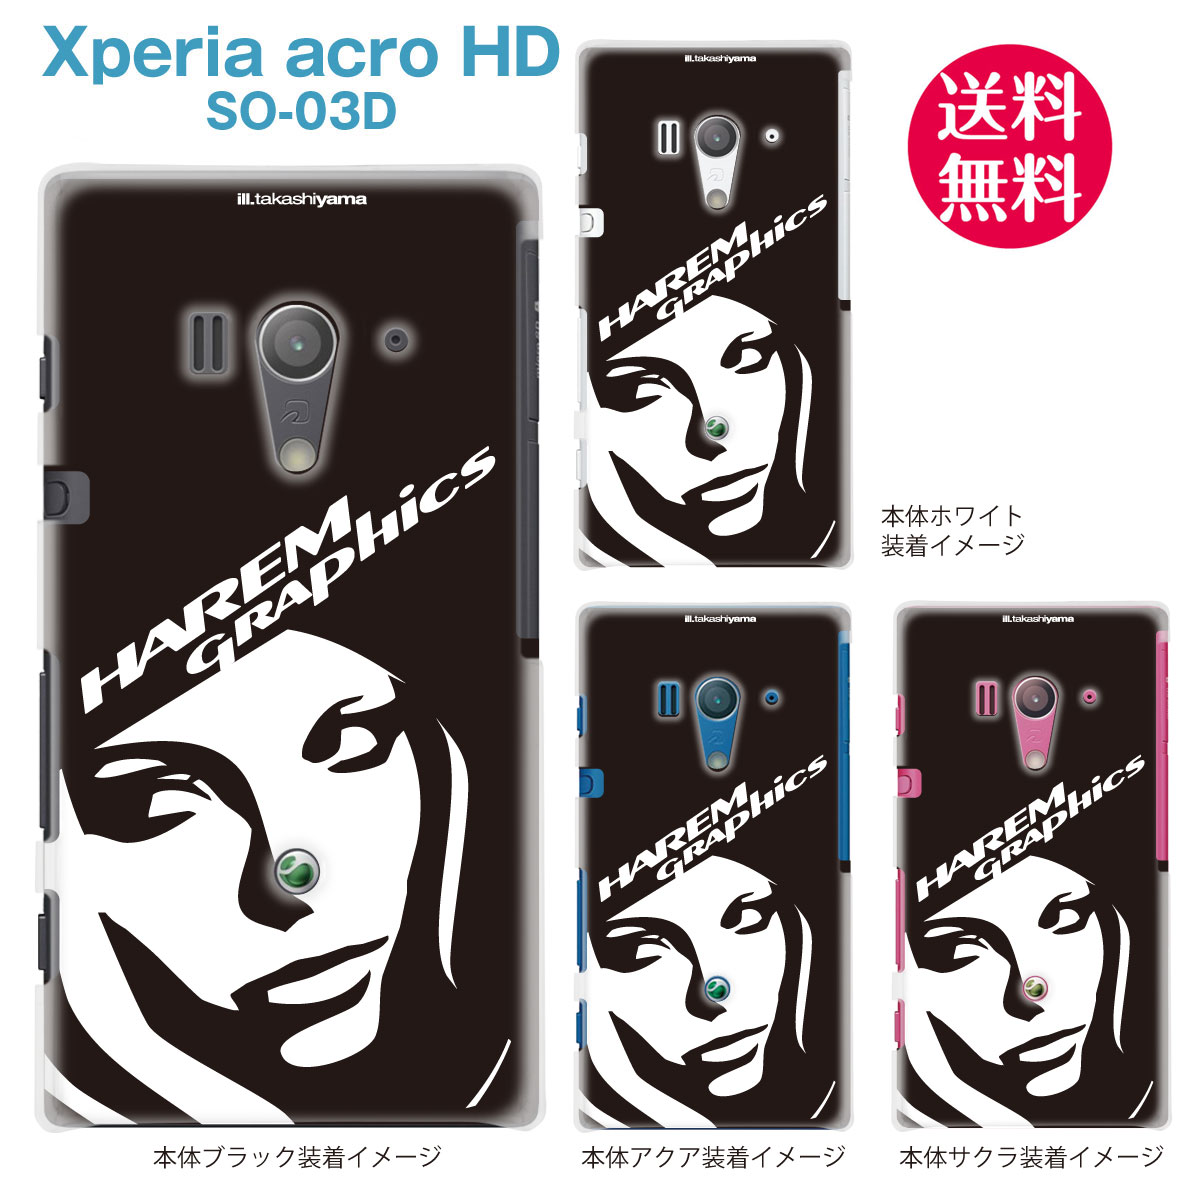 【HAREM GRAPHICS】【Xperia acro HD SO-03D】【docomo】【au】【IS12S】【ケース】【カバー】【スマホケース】【クリアケース】　hgx-so03d-021a